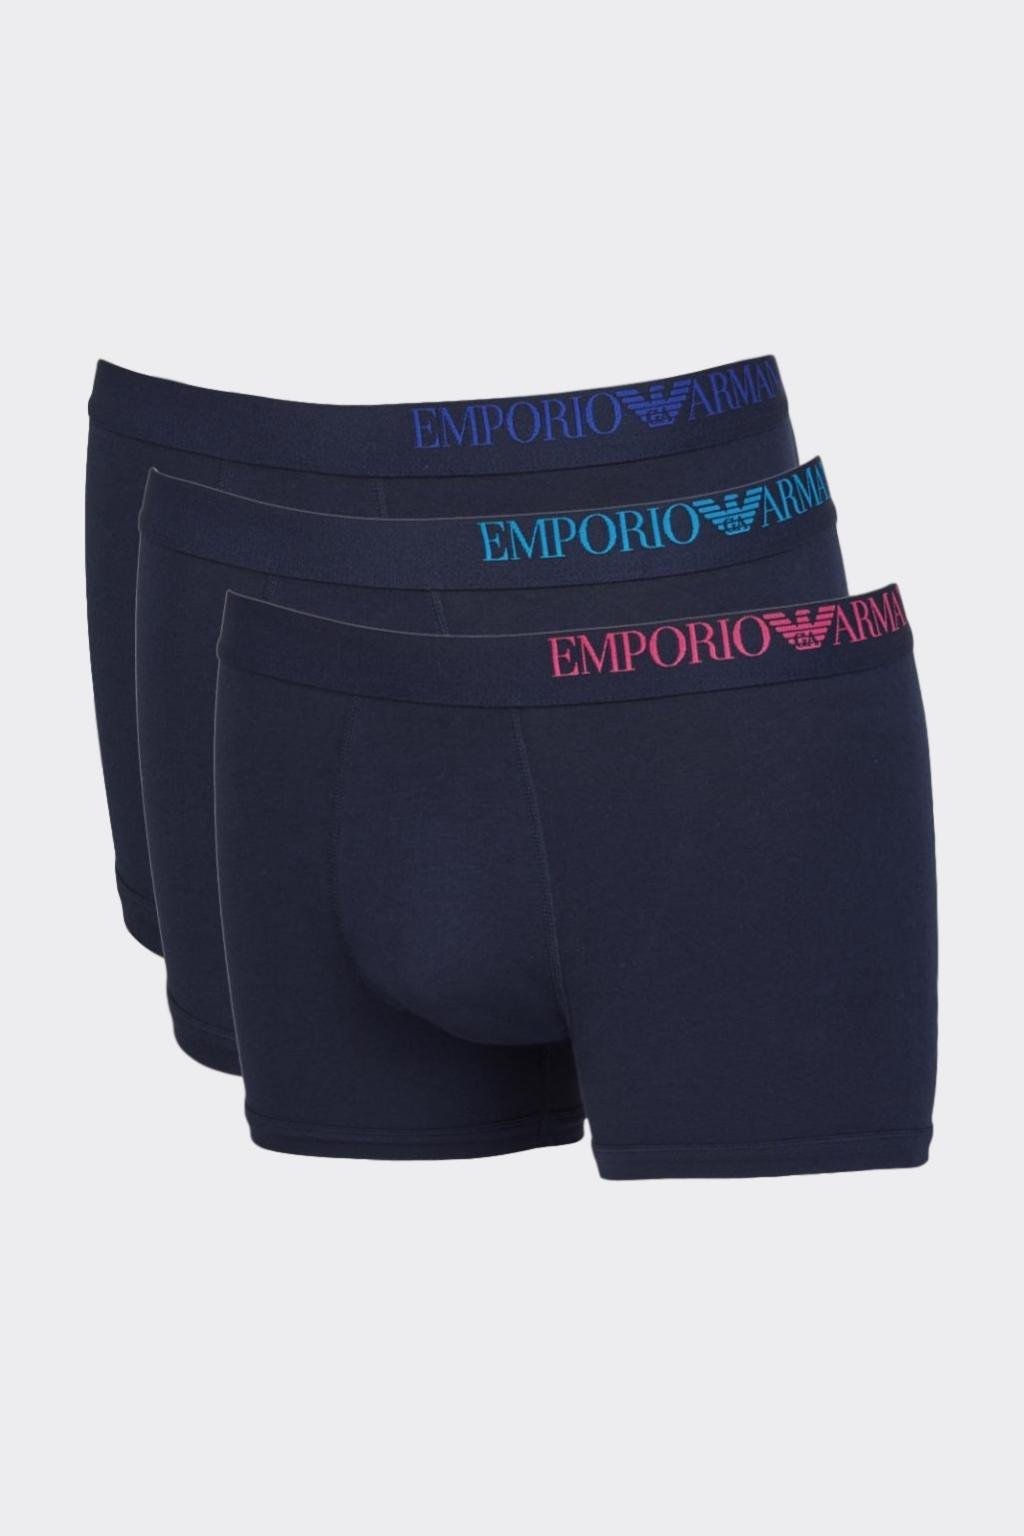 Emporio Armani b-side logo boxerky 3-balení - tmavě modrá